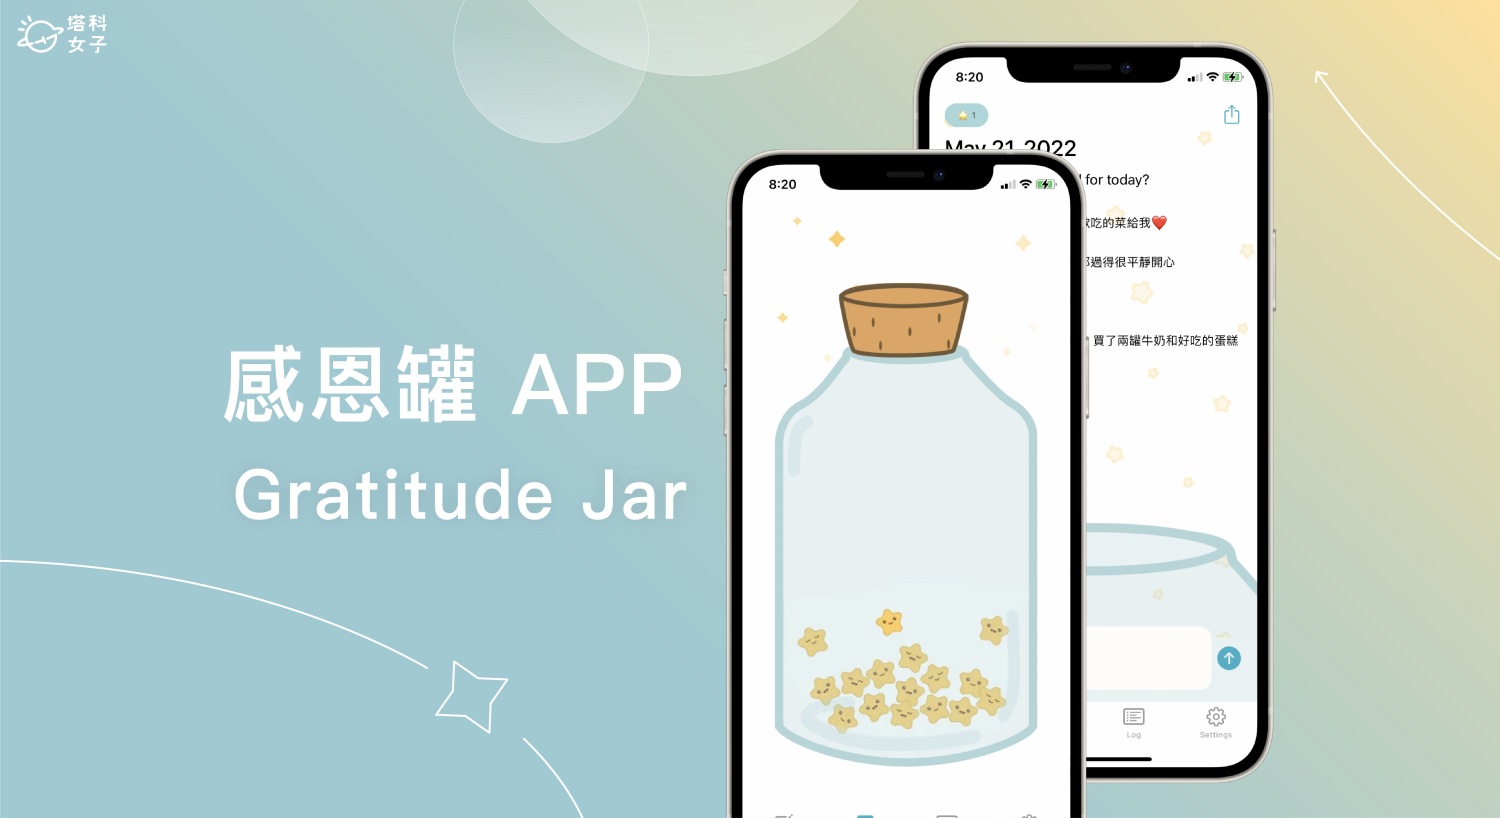 Gratitude Jar 感恩罐 App 將感恩小語寫成紙條蒐集在罐子裡 (iOS)